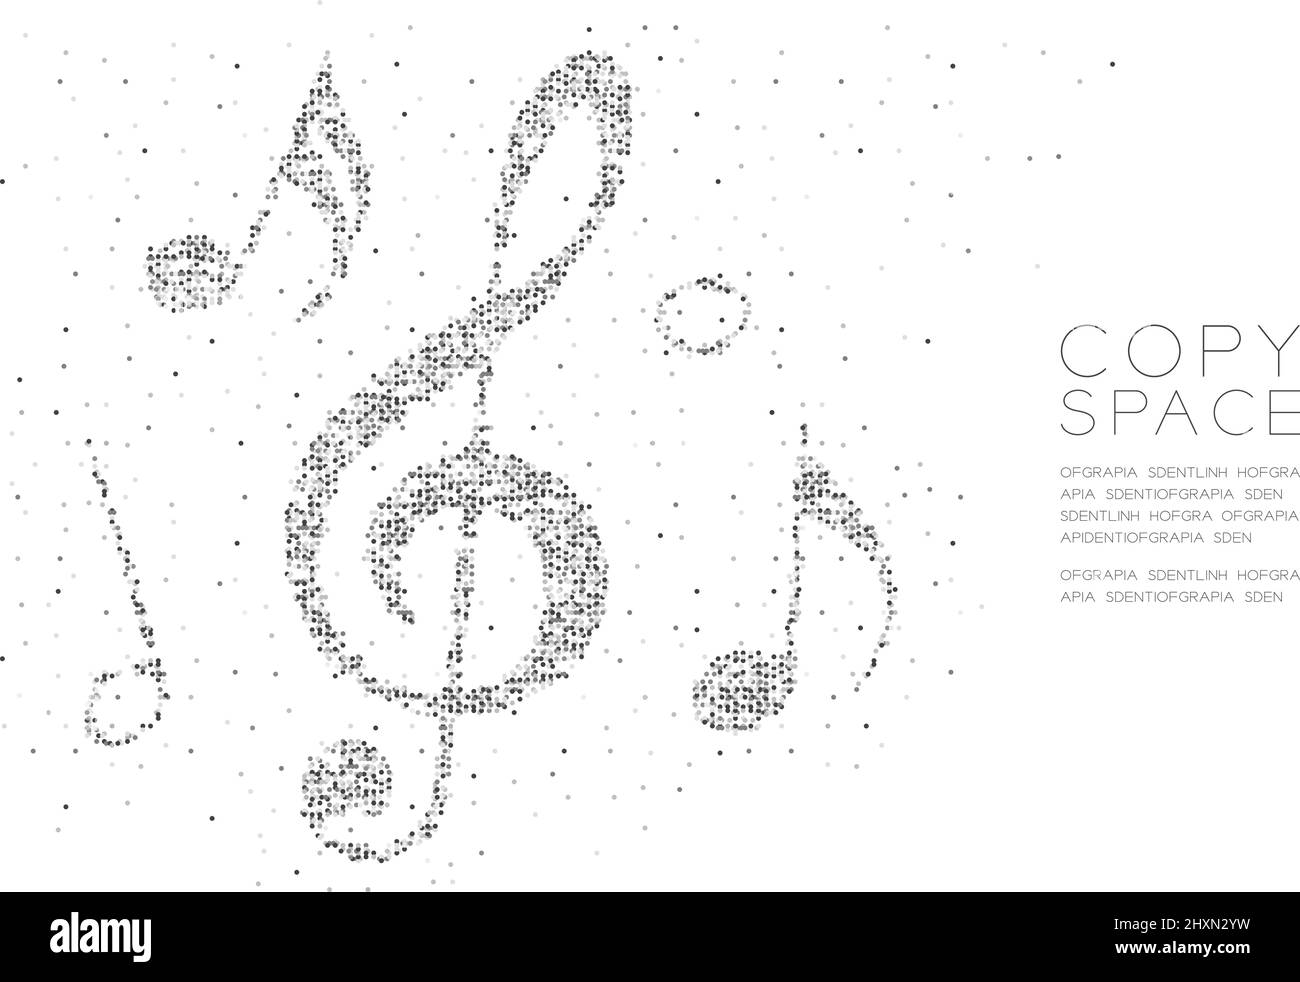 Abstrakt Geometrische Kreis Punkt Pixel Muster Musik Note Form Konzept Design schwarze Farbe Illustration auf weißem Hintergrund mit Kopierraum, Vektor eps 1 Stock Vektor